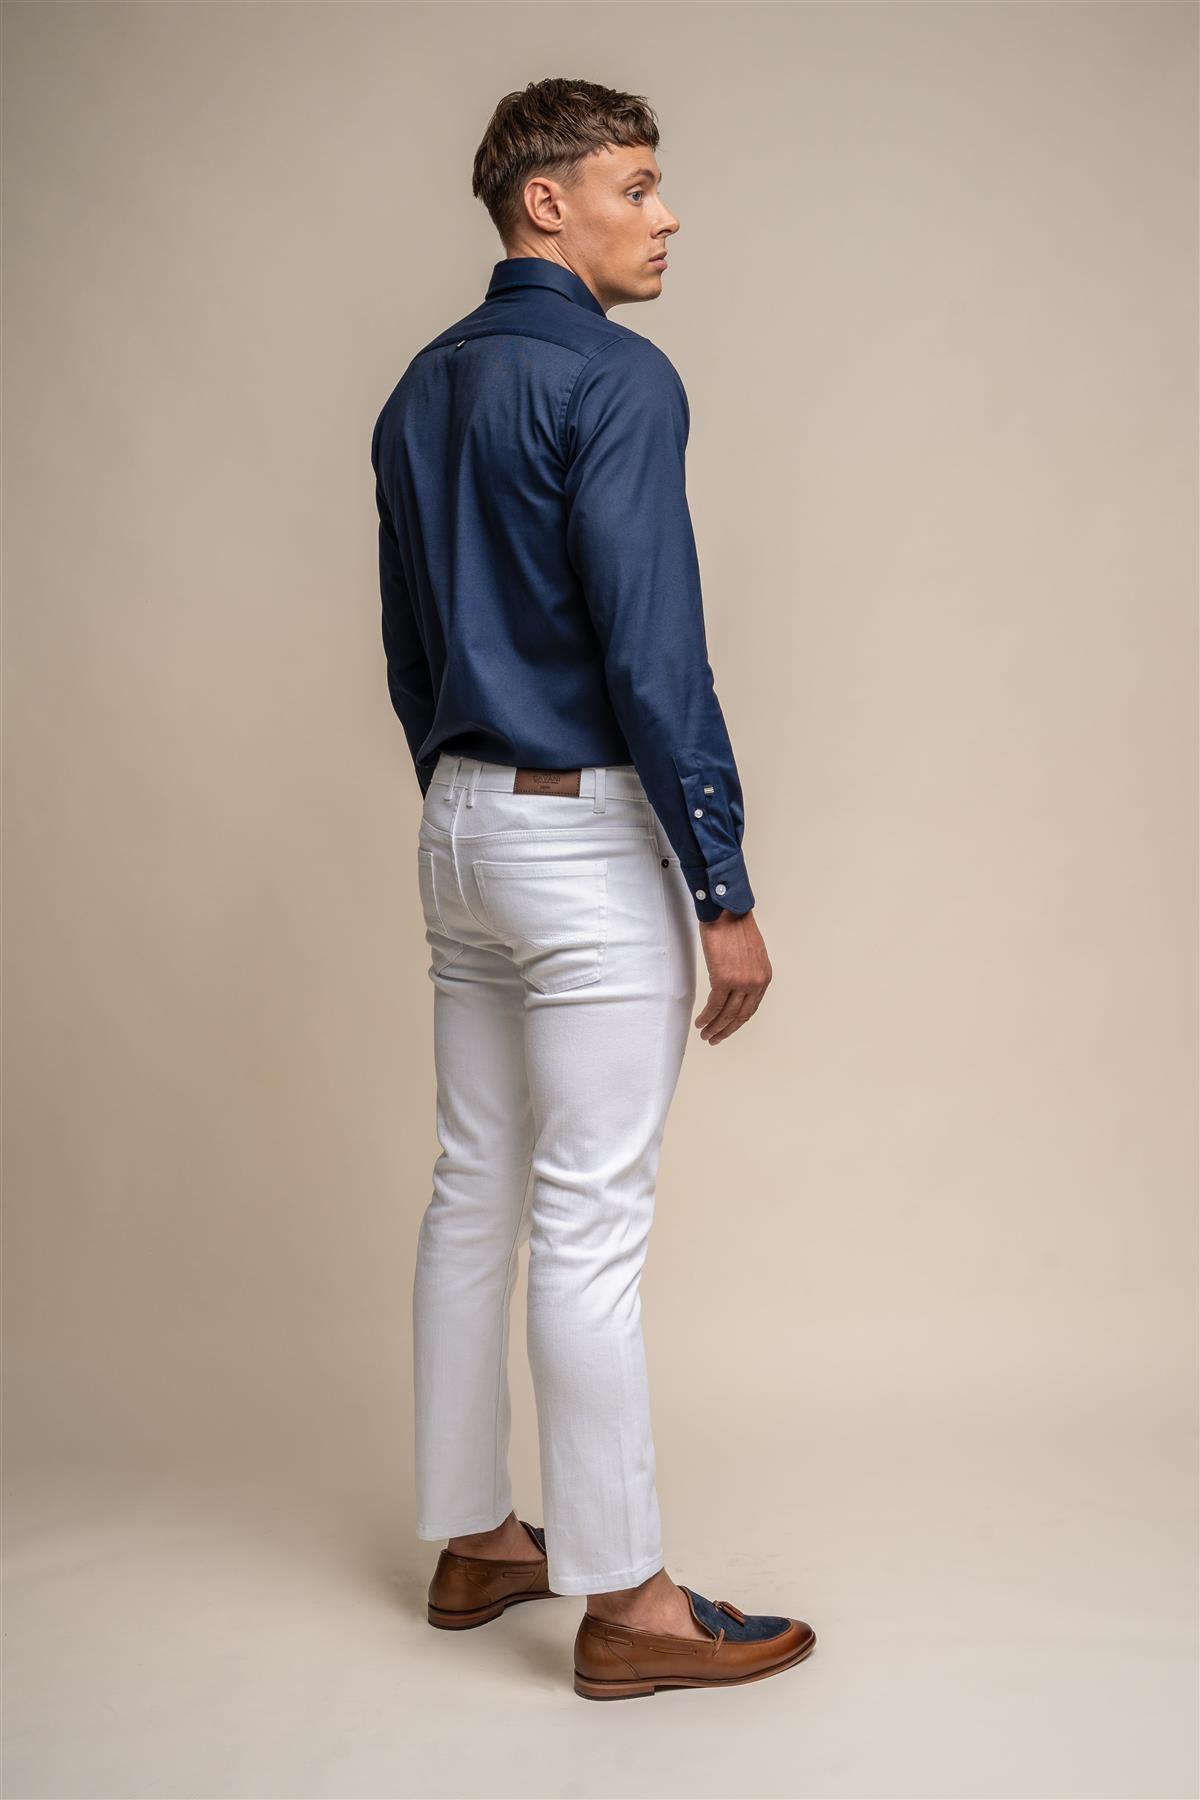 Milano White Jeans